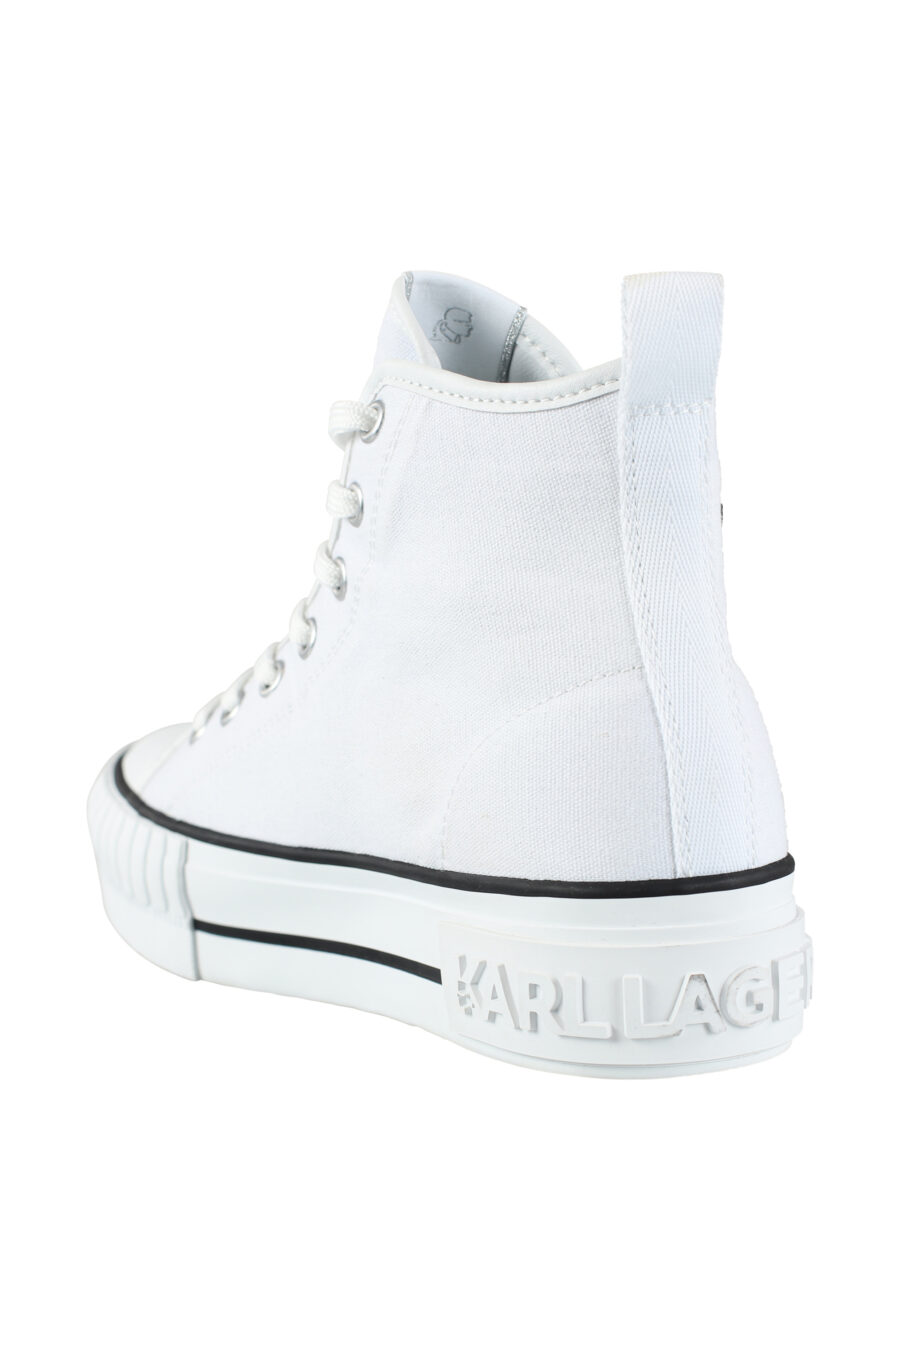 Zapatillas altas blancas estilo converse con logo "karl" en goma - IMG 9572